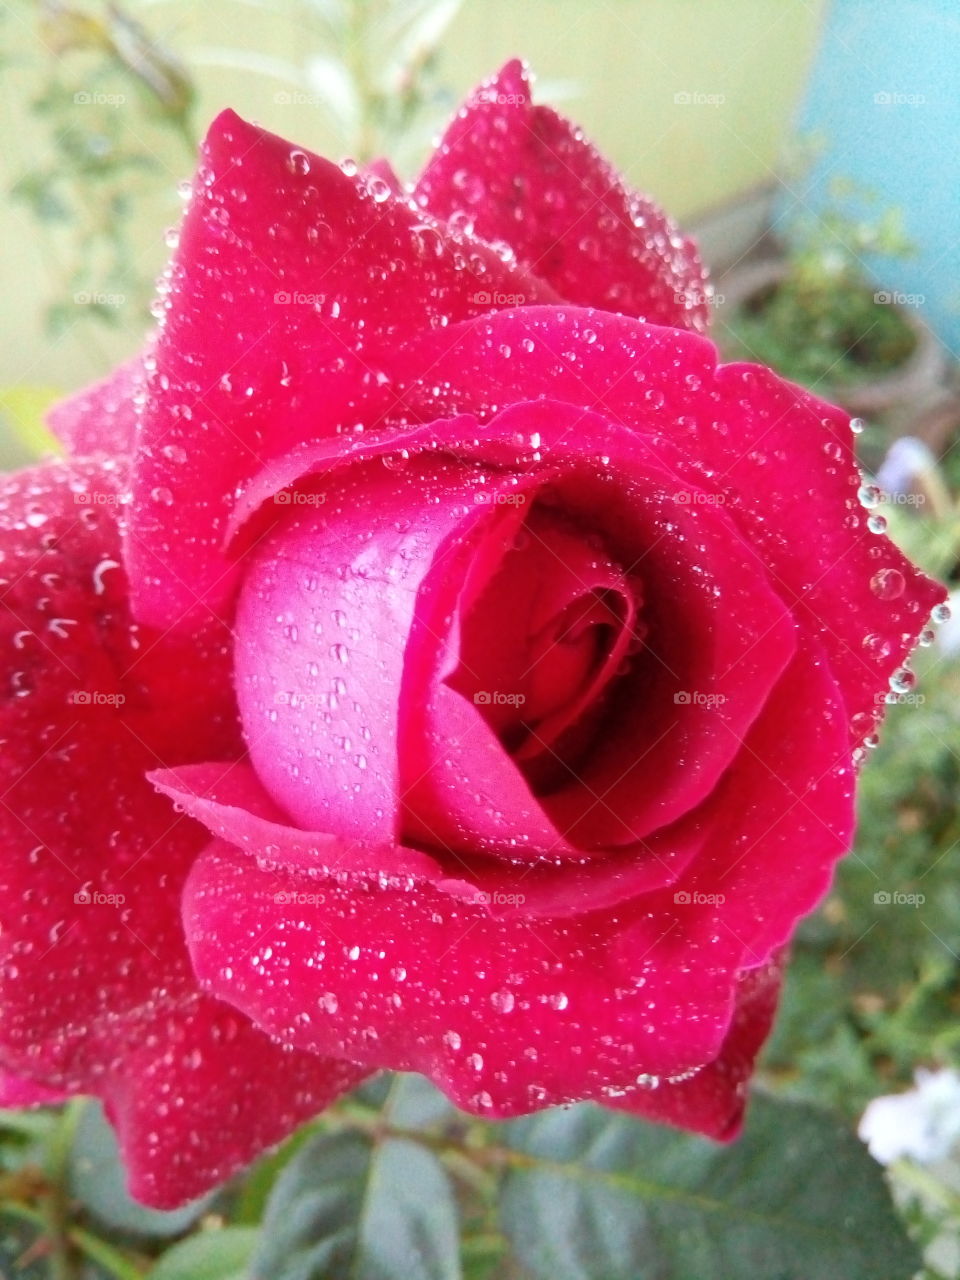 Lovely rose